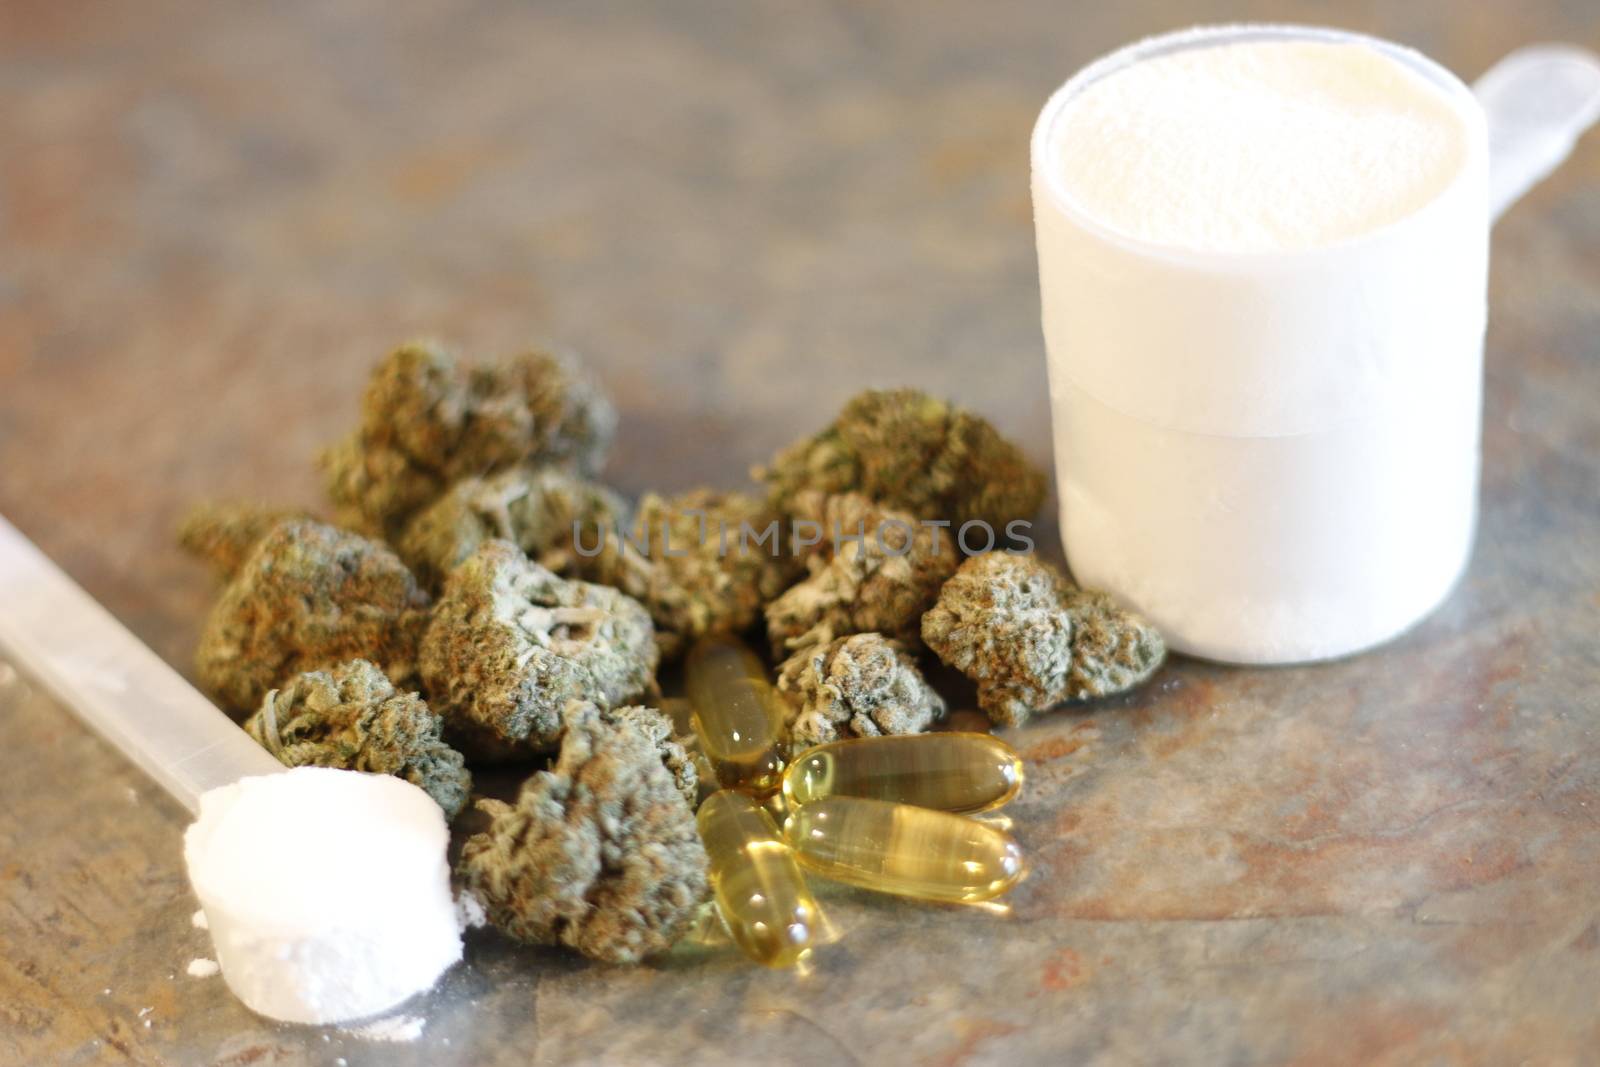 creatine and protein supplements next to marijuana by mynewturtle1